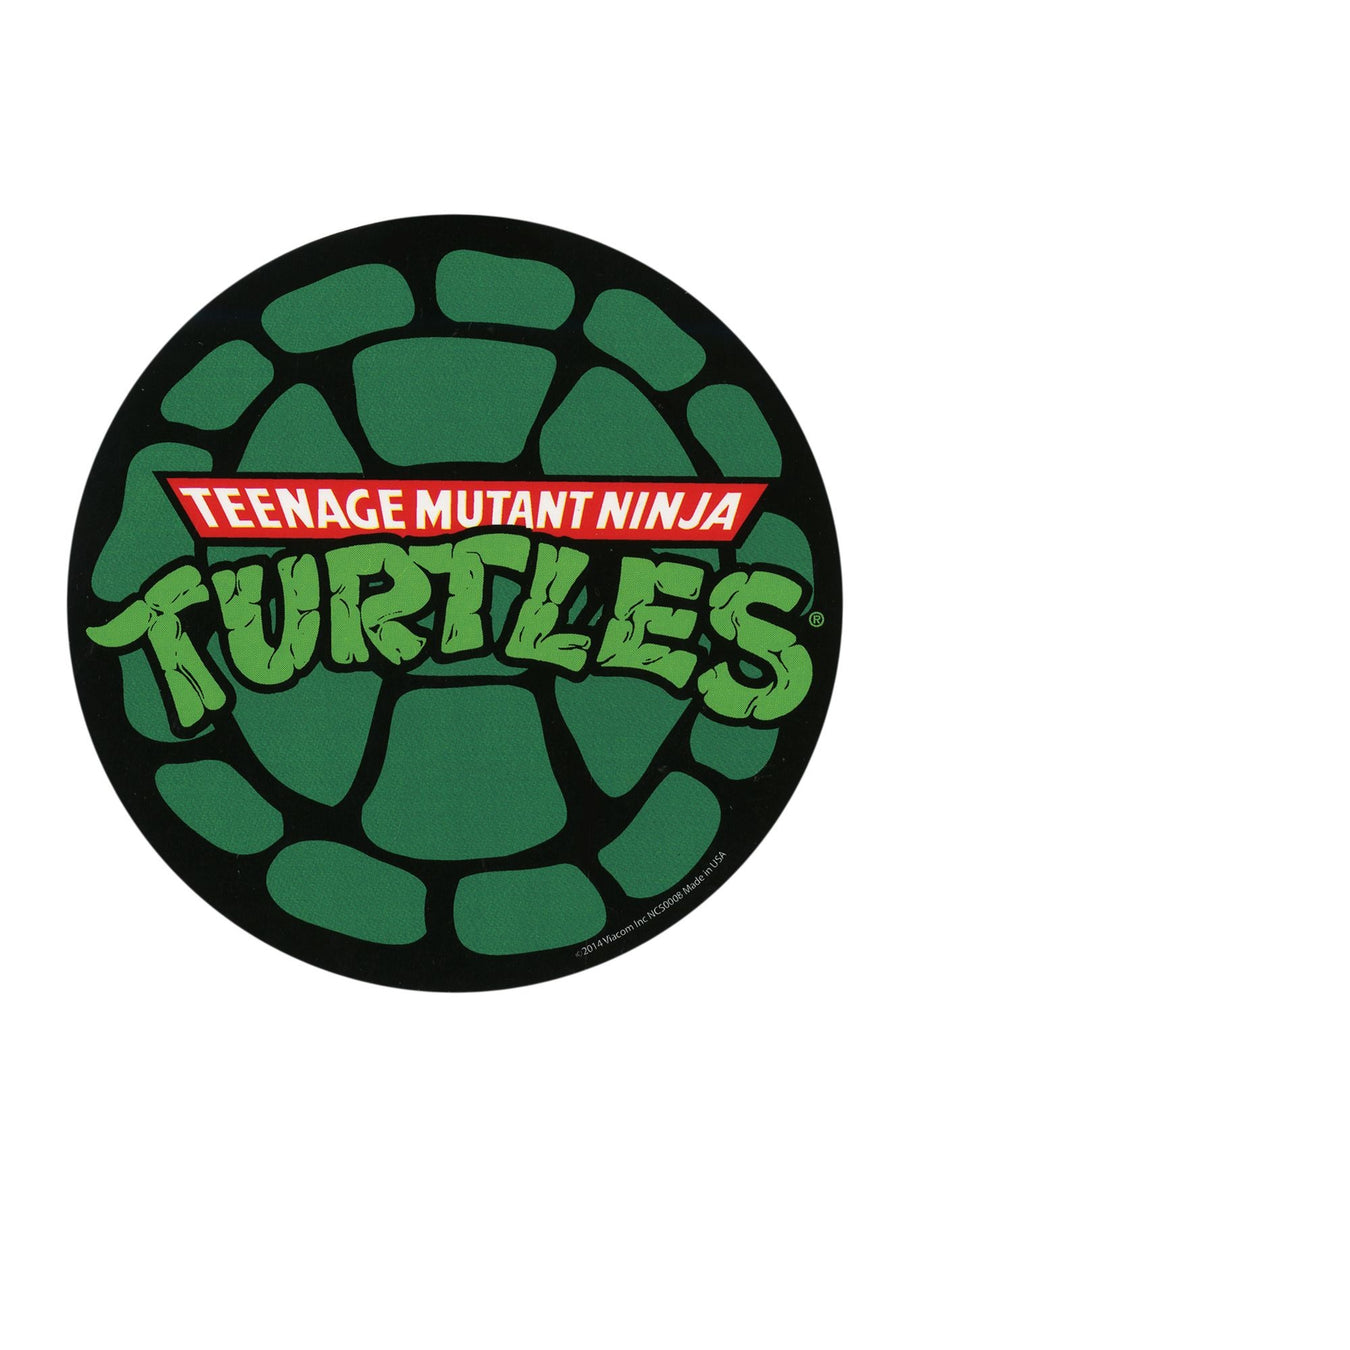 Teenage Mutant Ninja Turtles Compression Rashguard Shirt